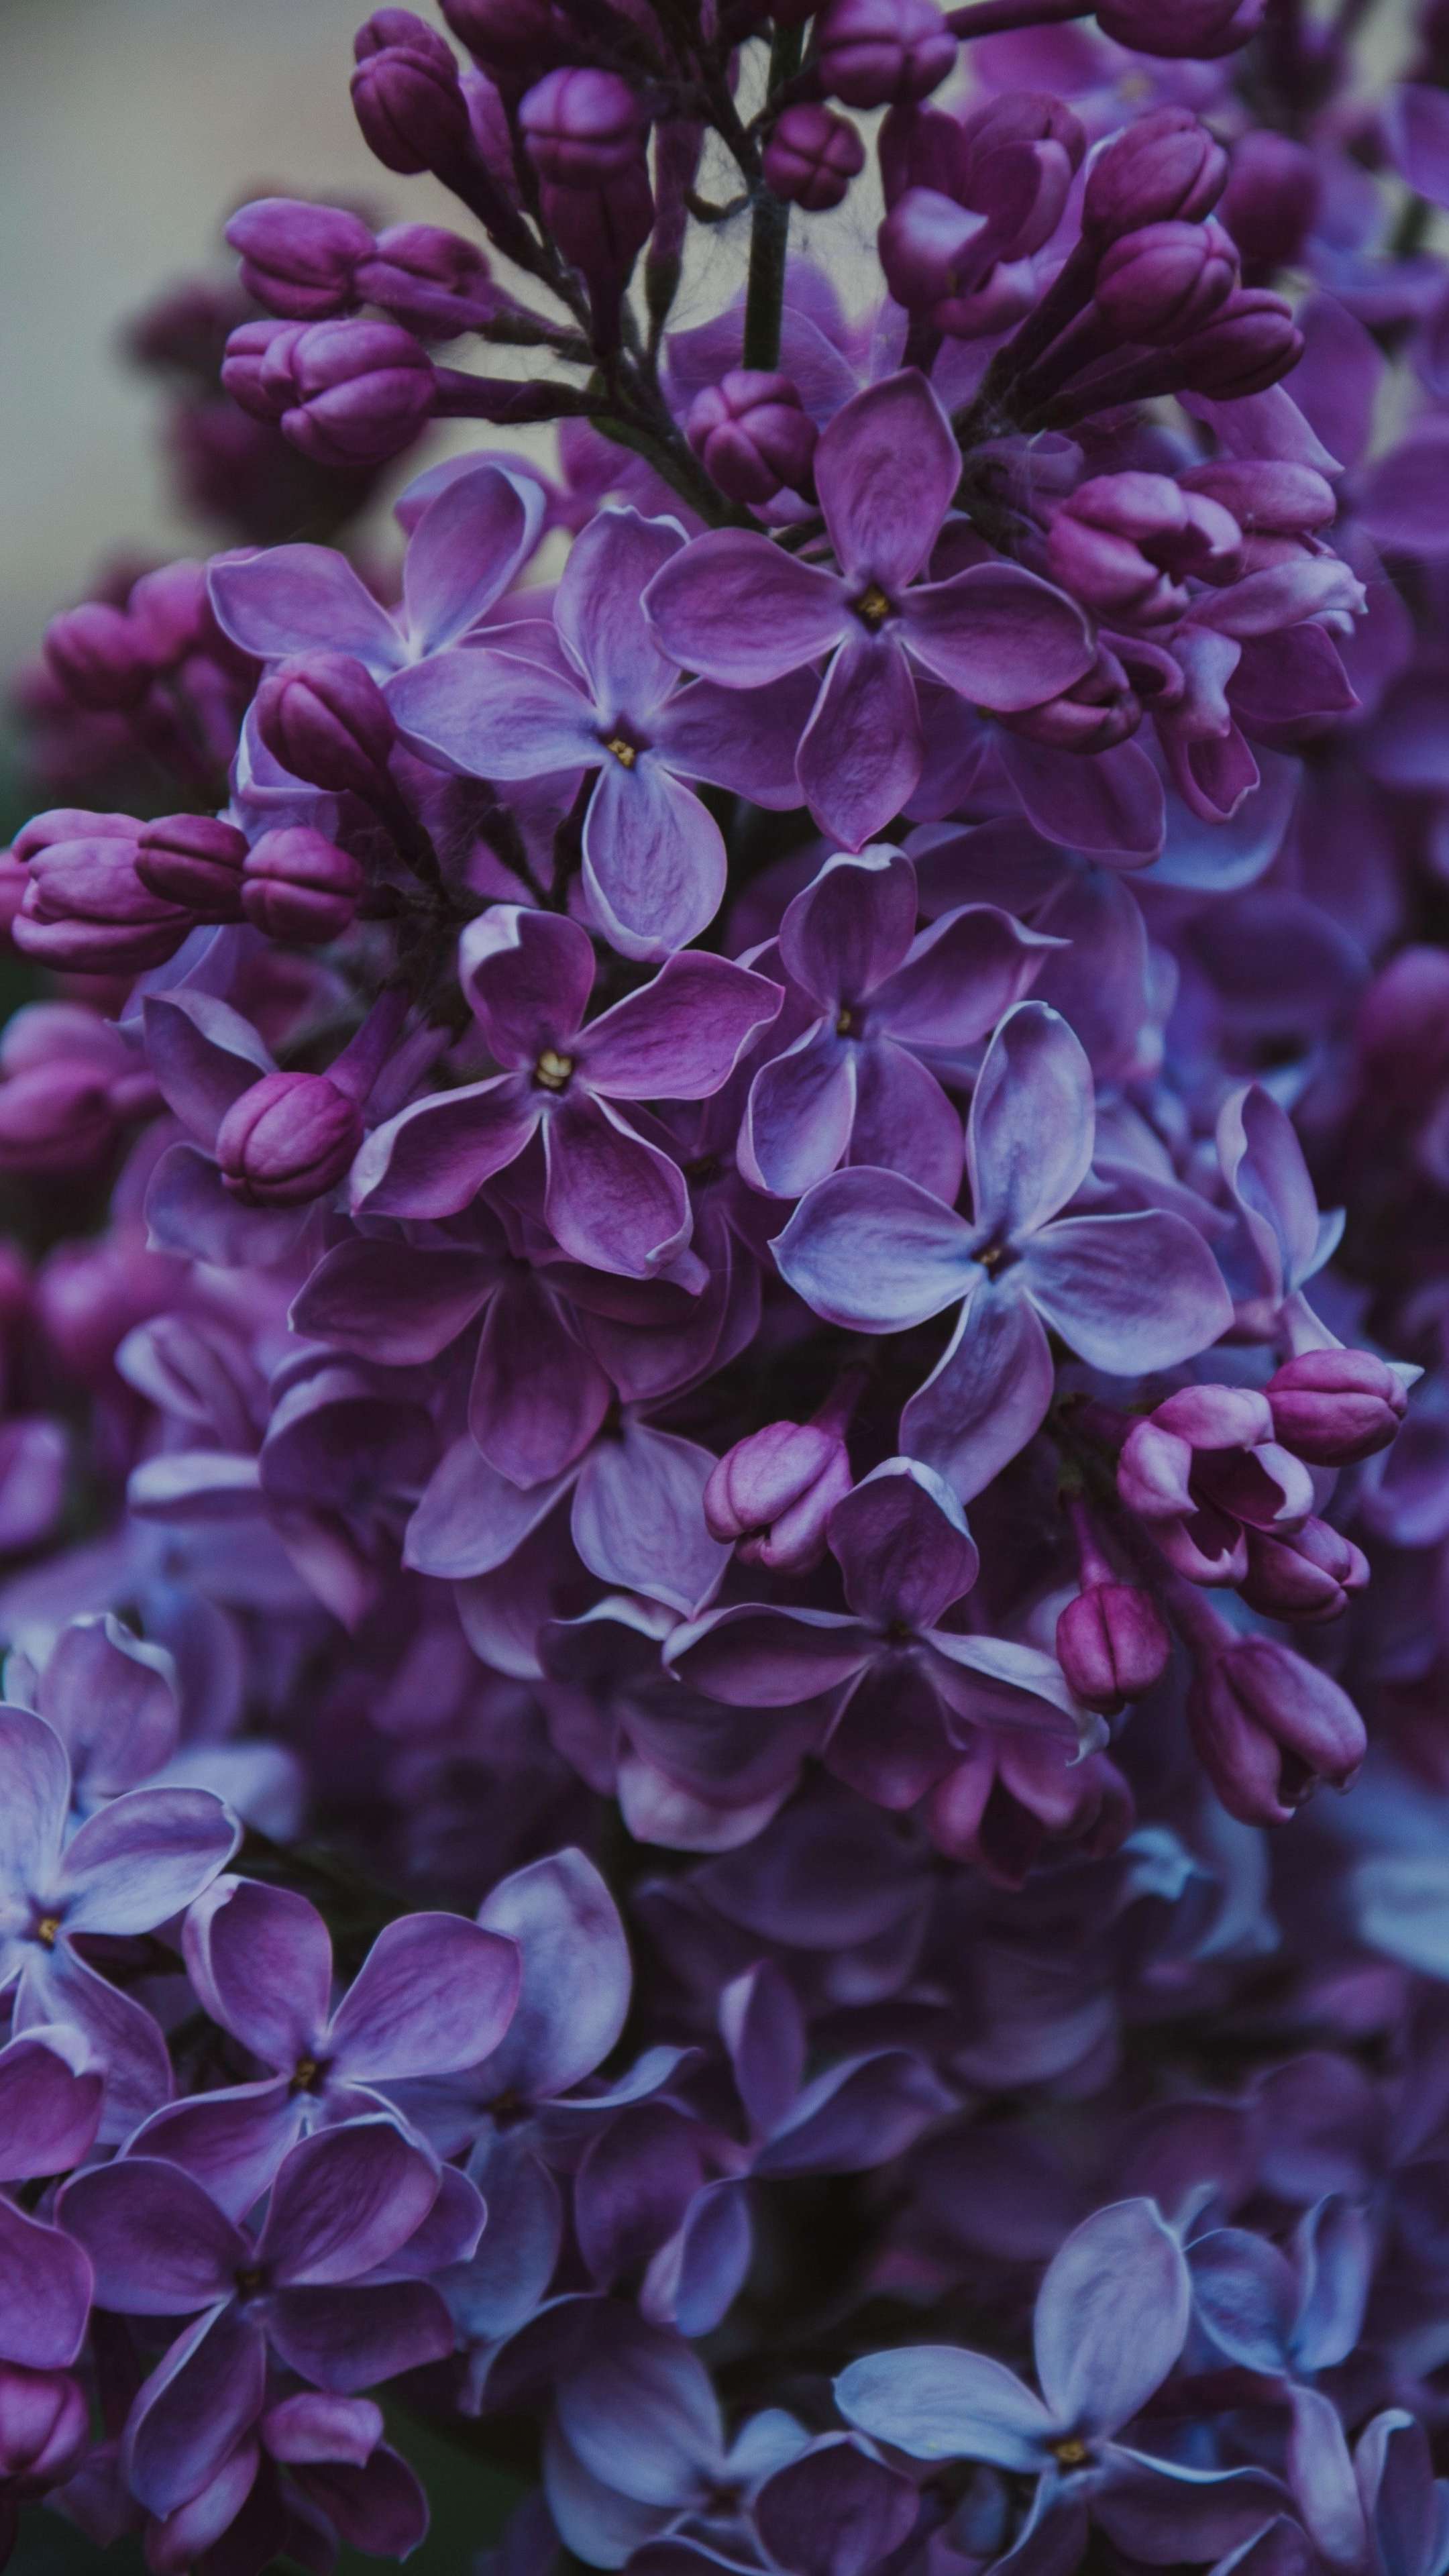 Iphone purple flower HD wallpapers  Pxfuel